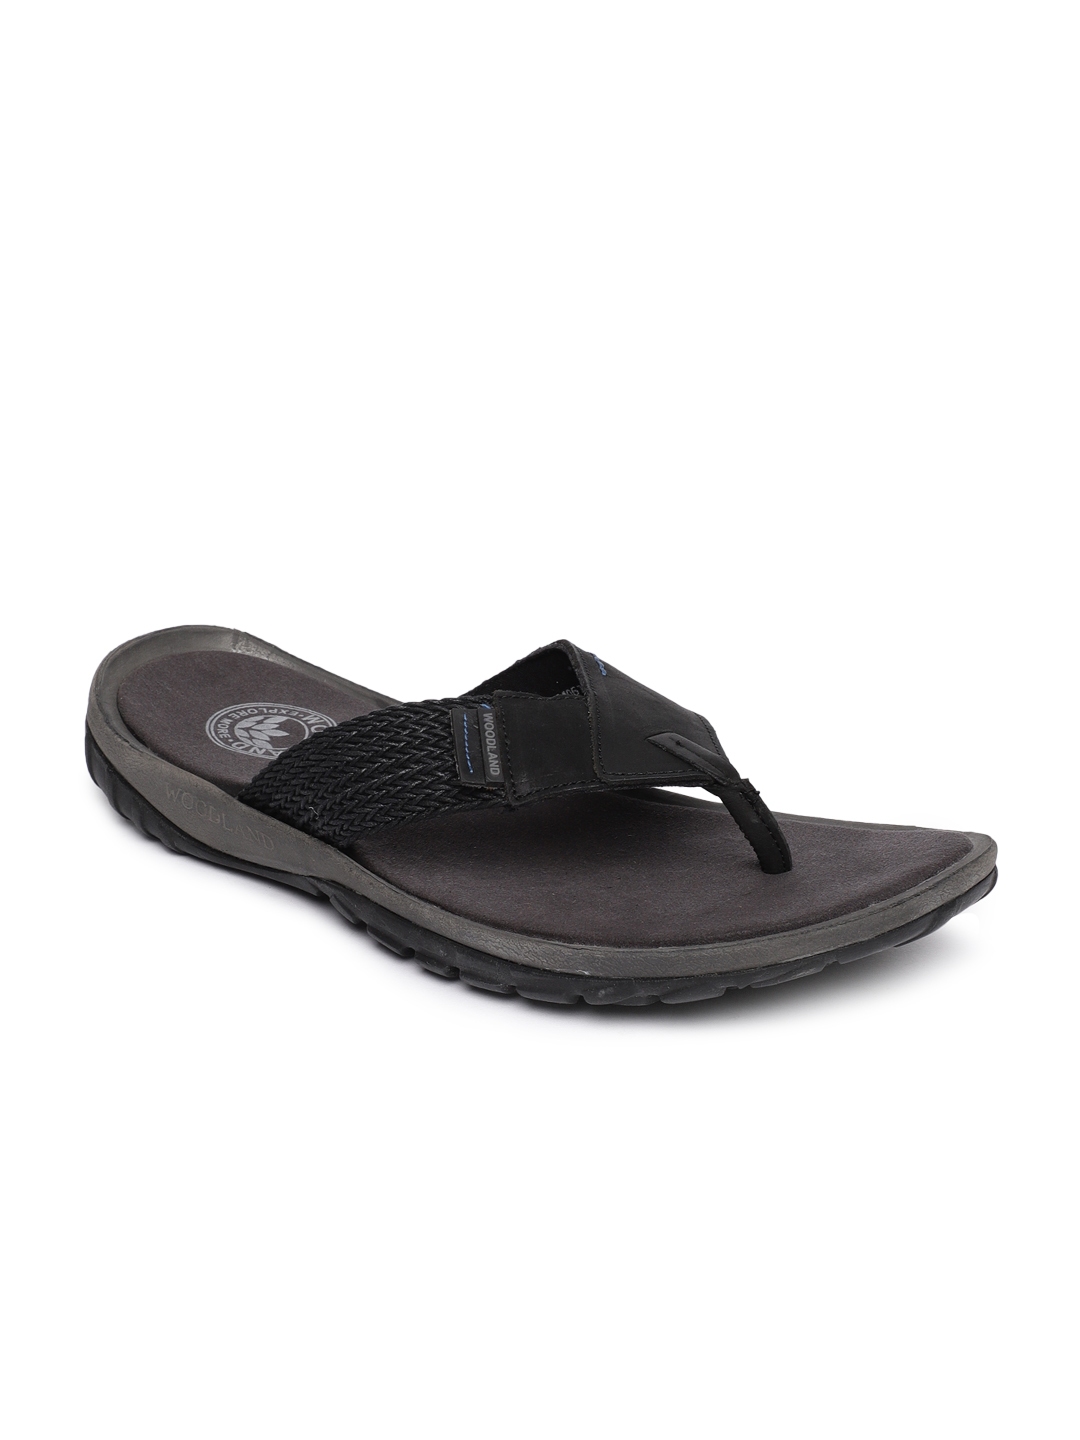 Buy Woodland Men Black Leather Comfort Sandals - Sandals for Men ...